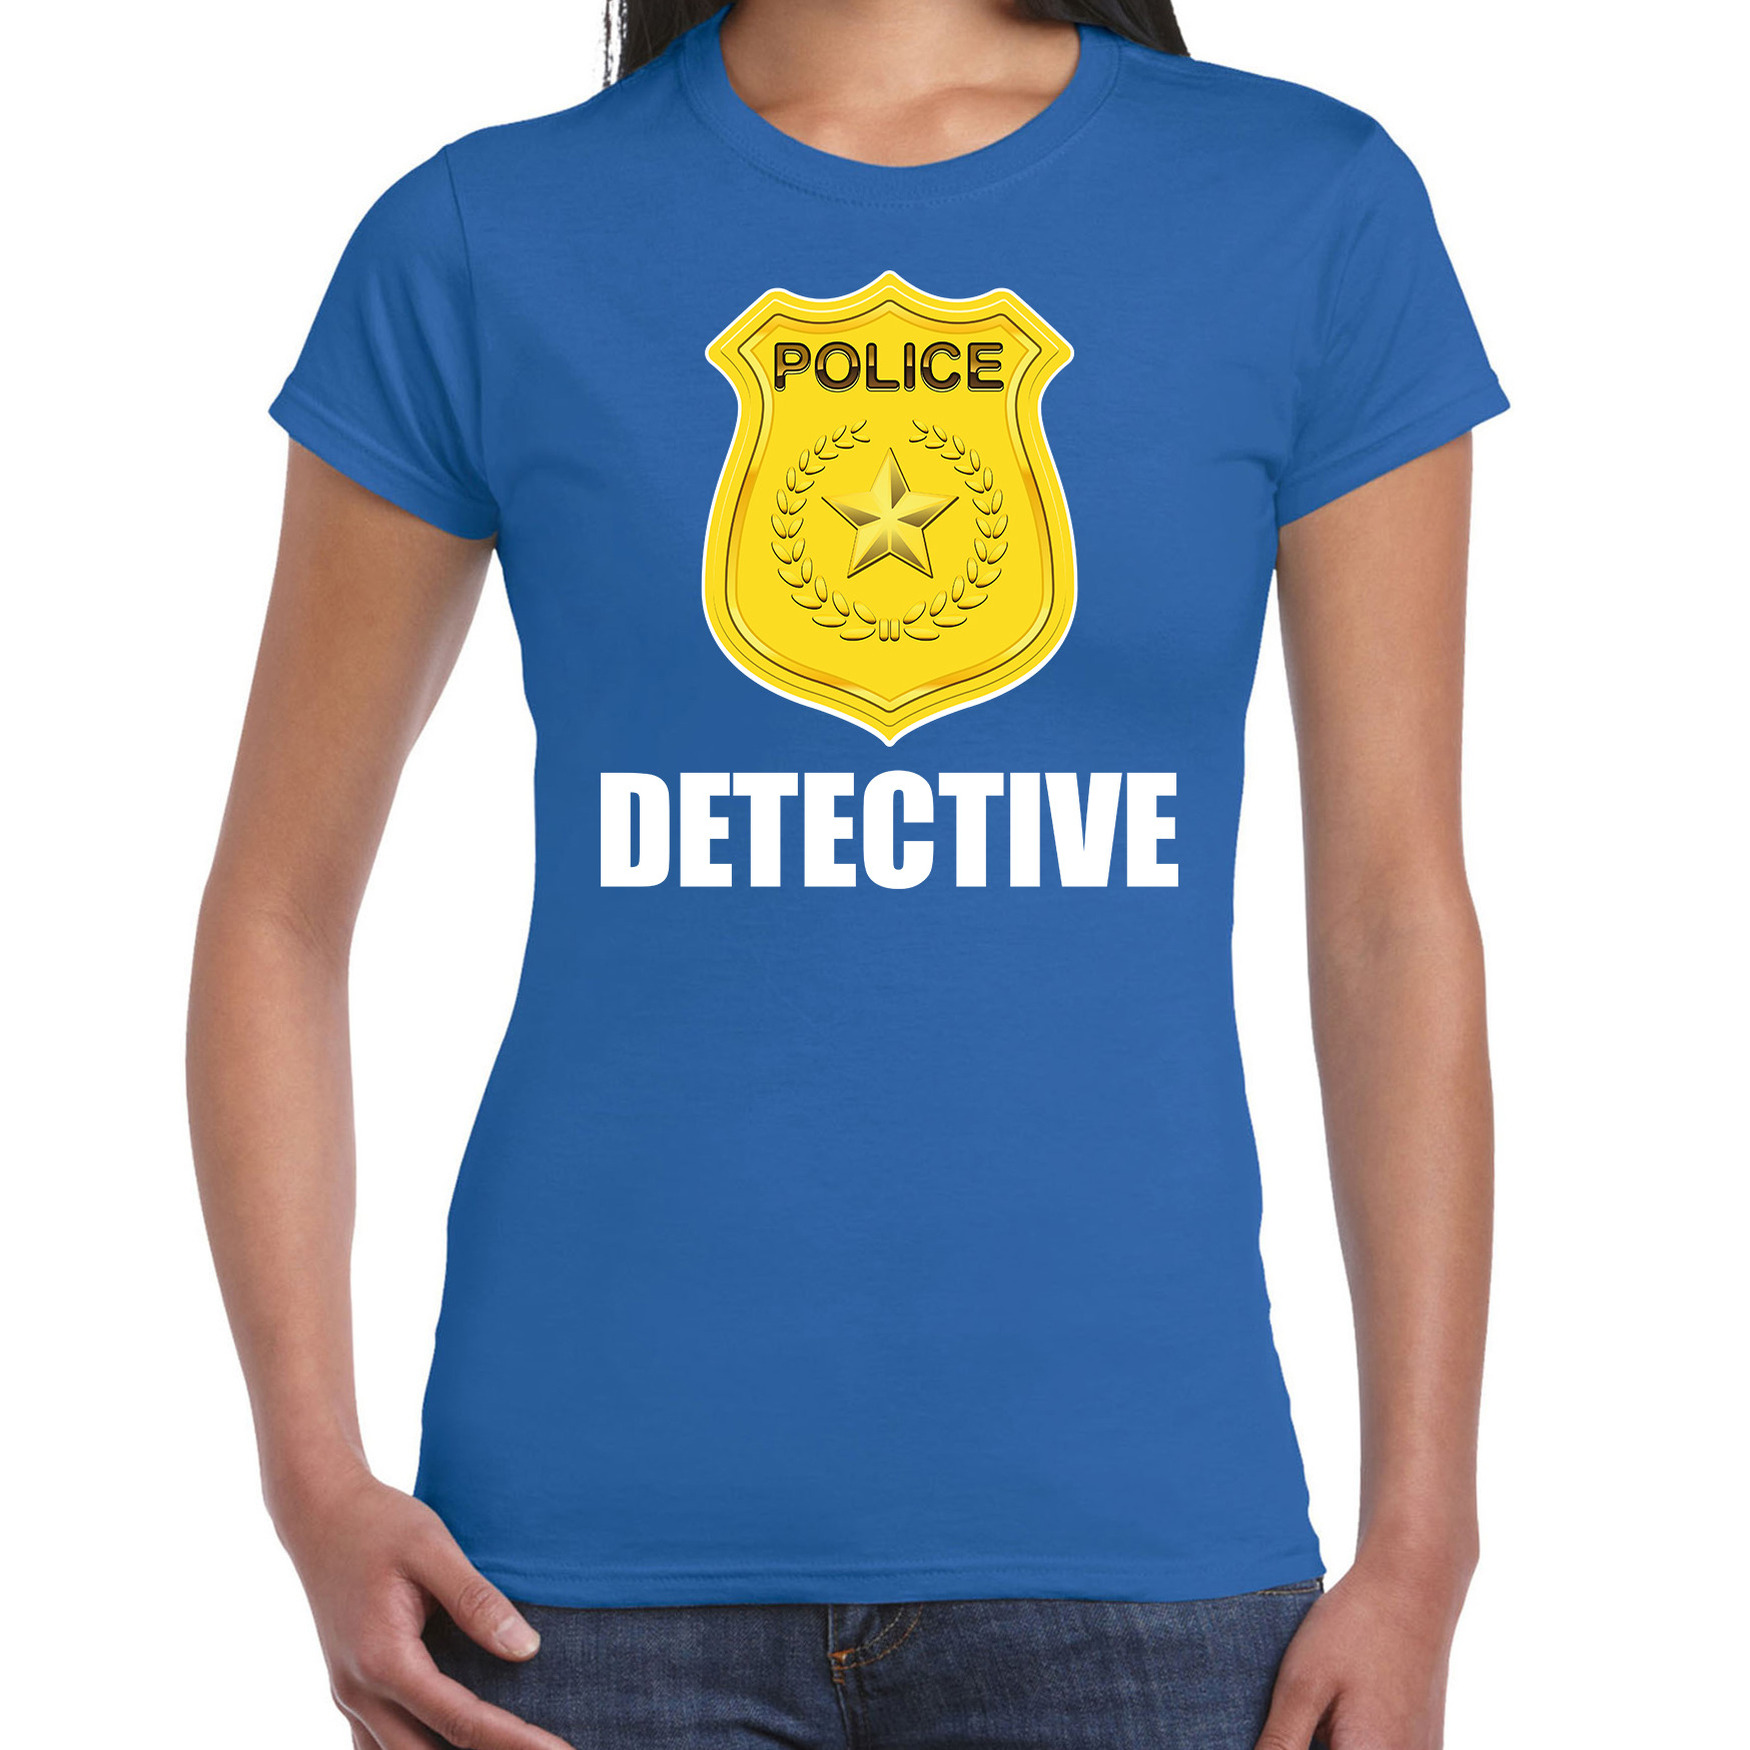 Politie-police embleem detective t-shirt blauw voor dames